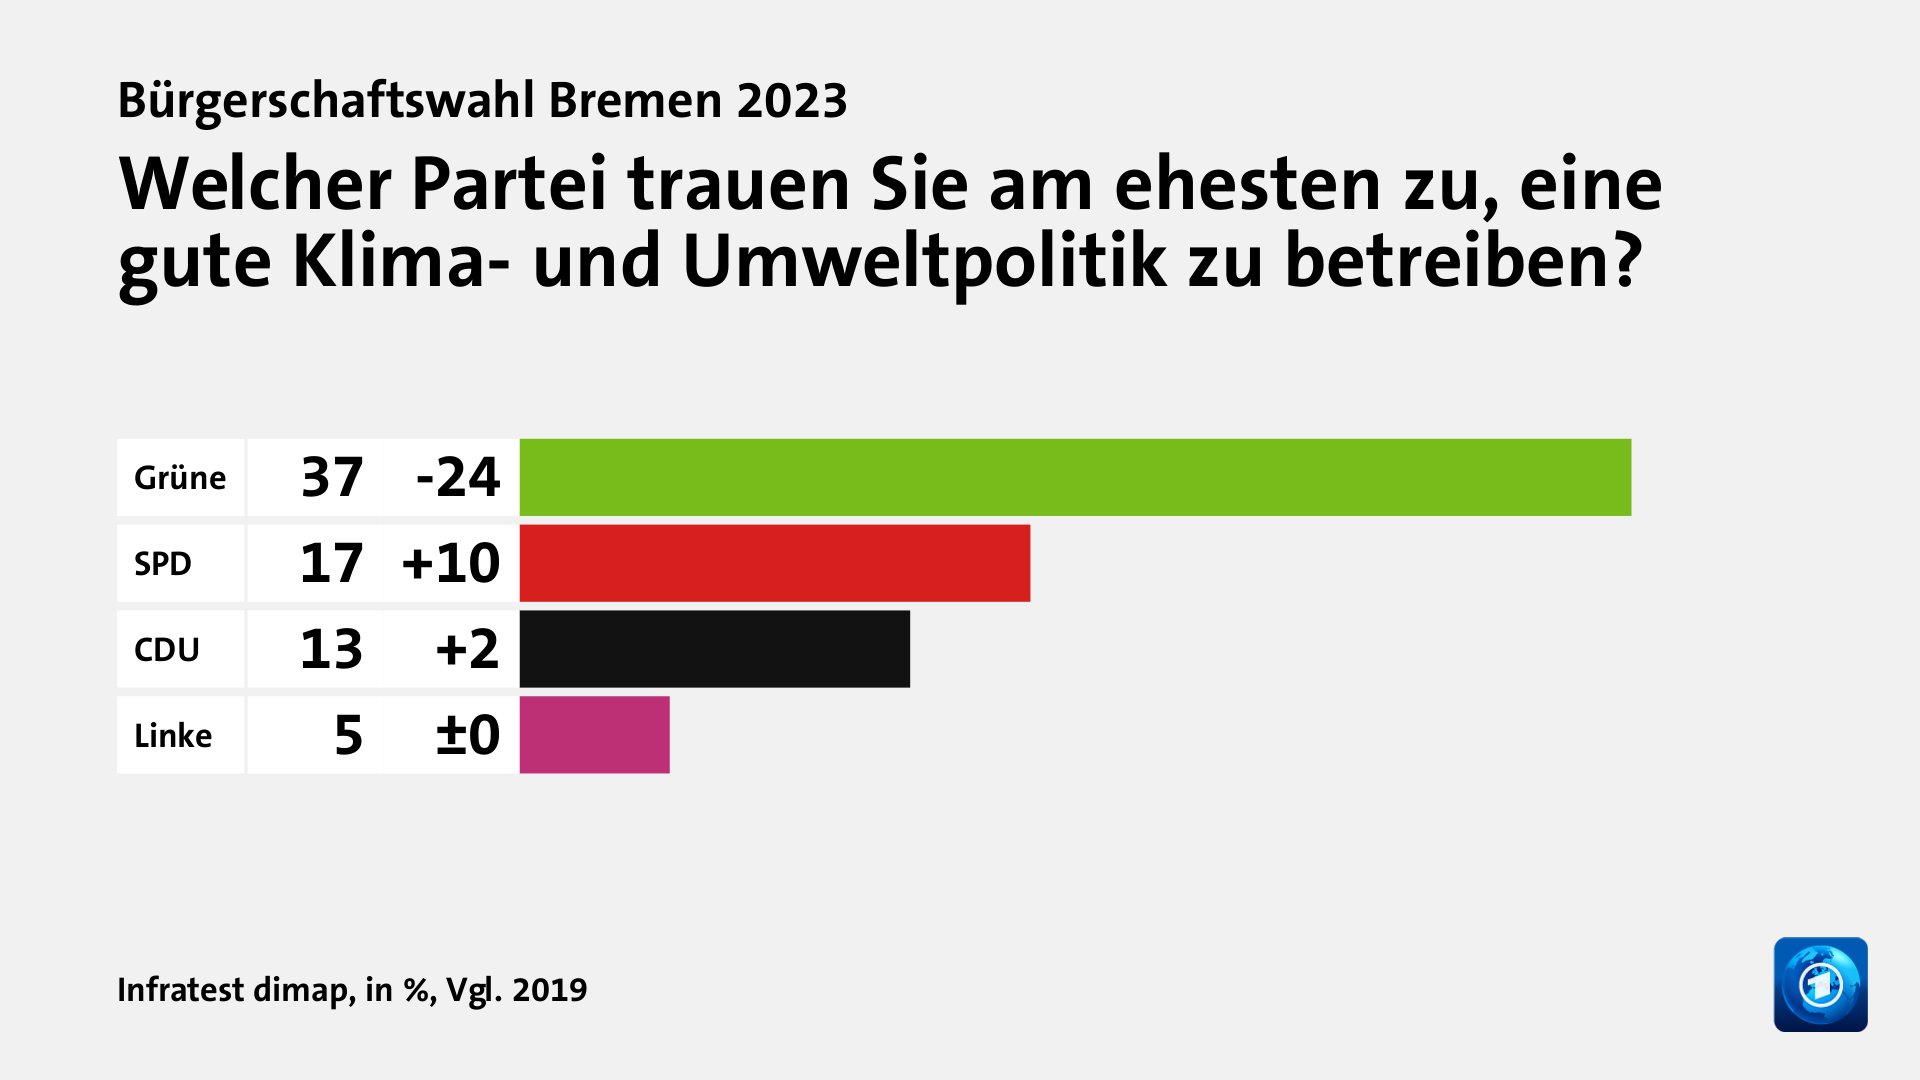 Welcher Partei trauen Sie am ehesten zu, eine gute Klima- und Umweltpolitik zu betreiben?, in %, Vgl. 2019: Grüne 37, SPD 17, CDU 13, Linke 5, Quelle: Infratest dimap